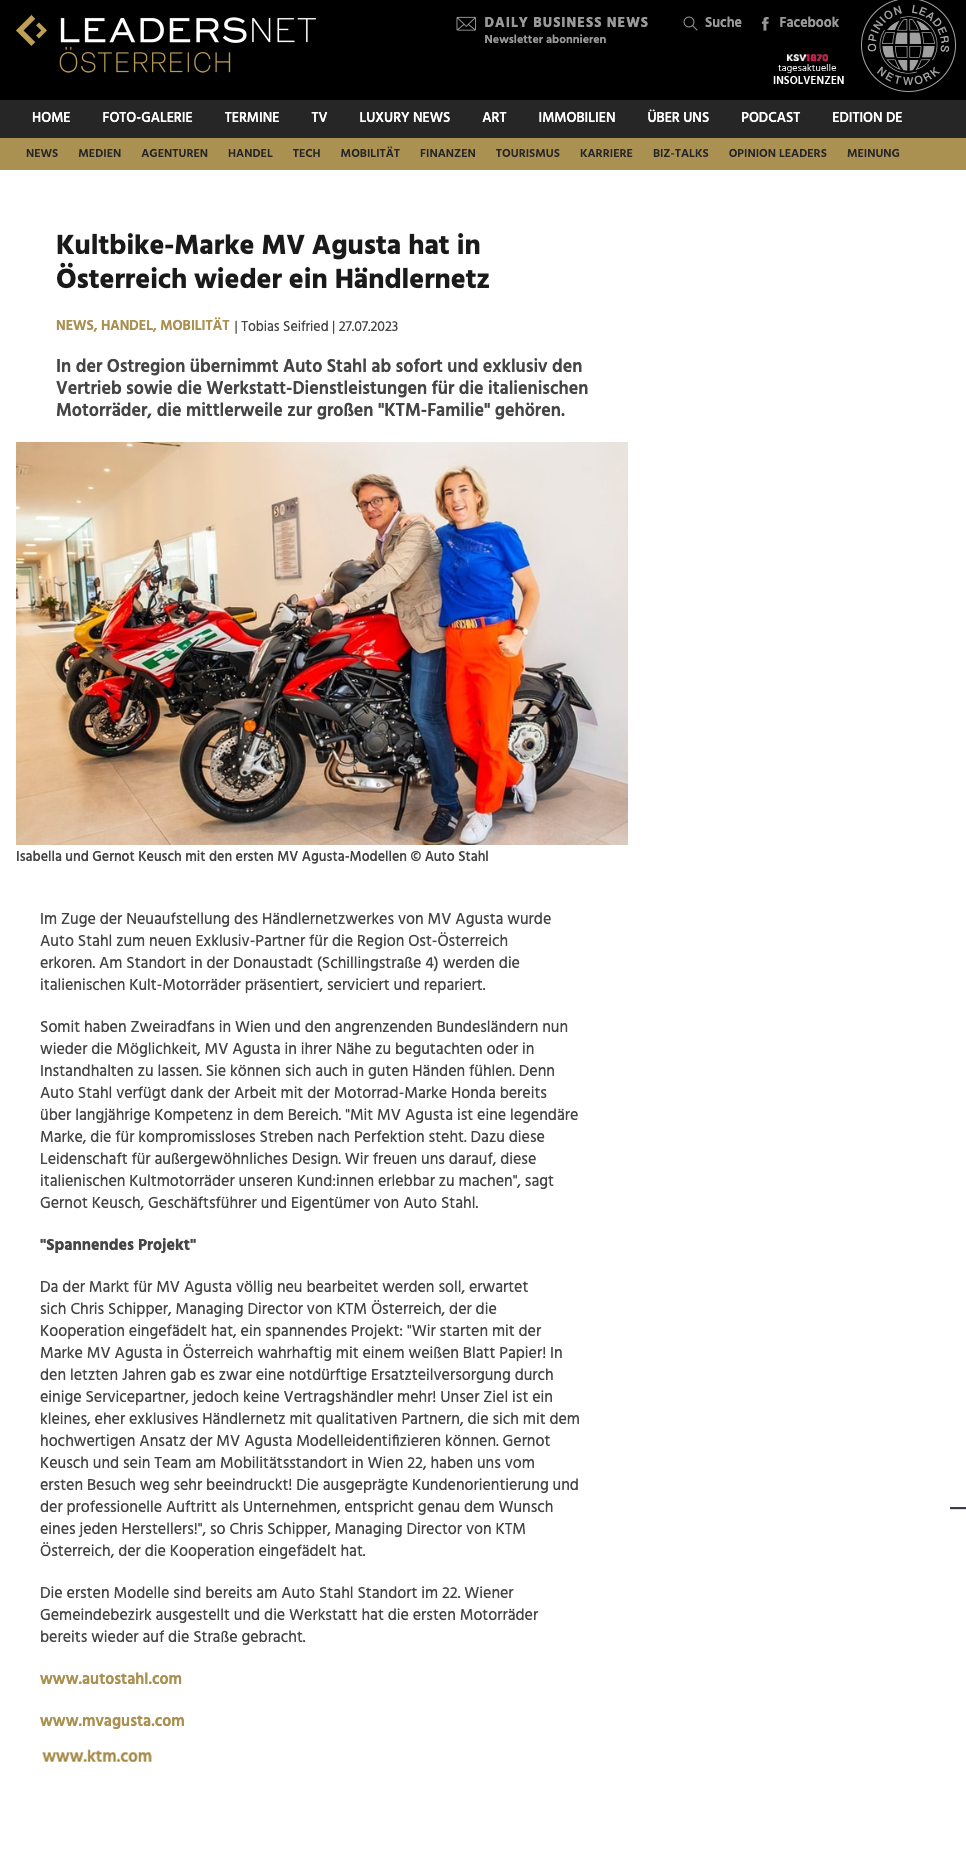 Kultbike-Marke MV Agusta hat in Österreich wieder ein Händlernetz